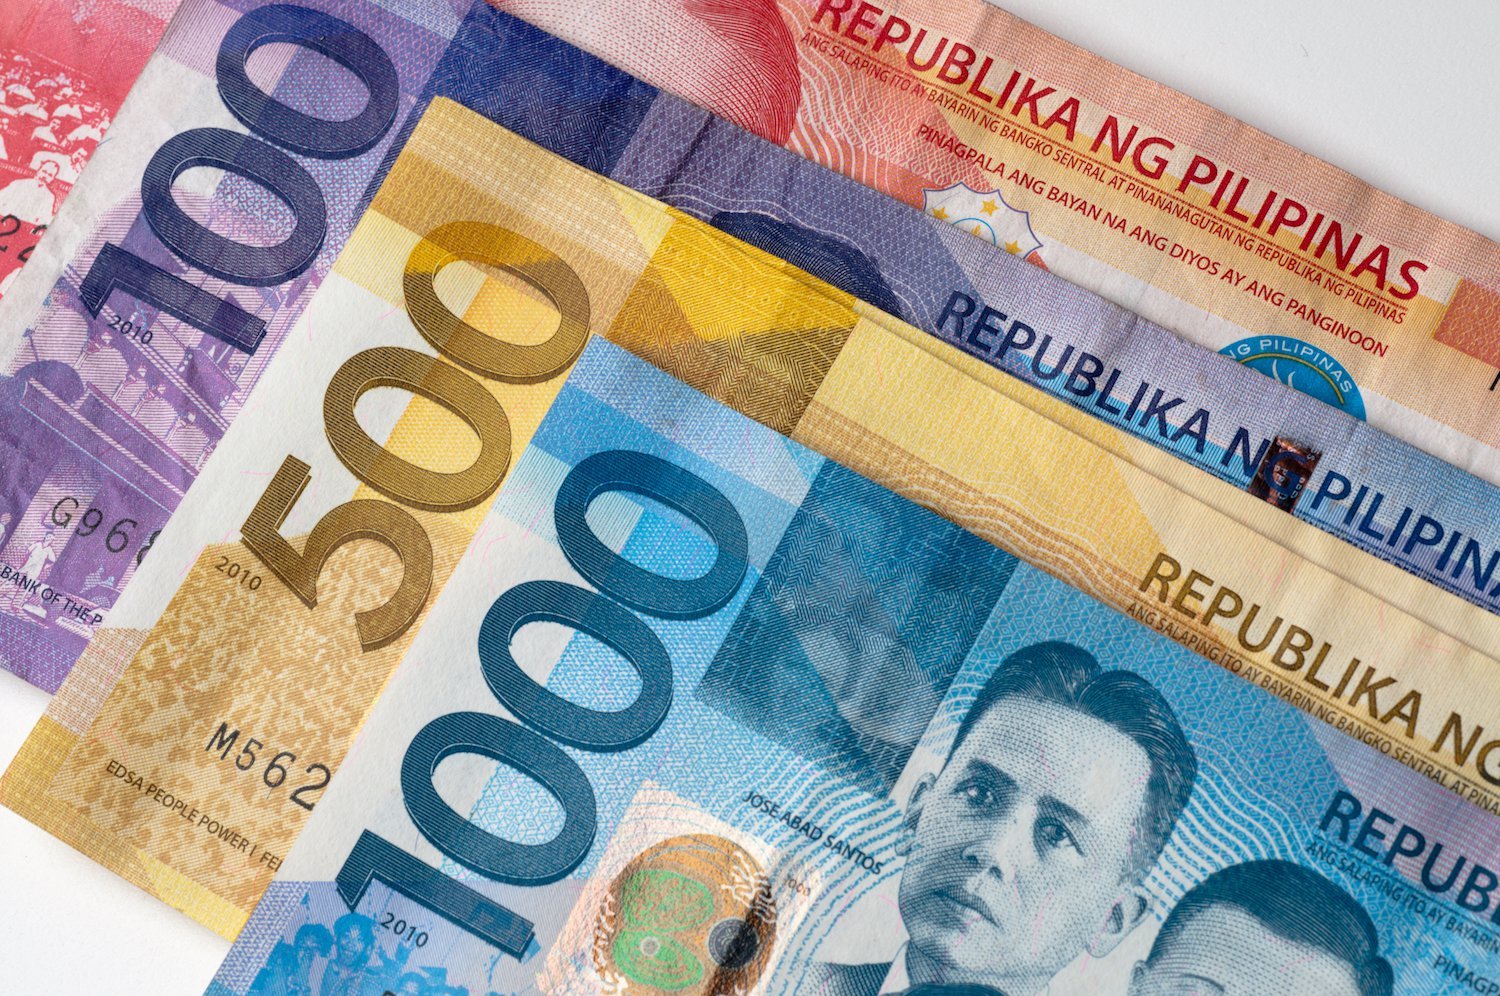 Philippines currency. Филиппинское песо. Филиппины банковская система. Филиппинские деньги.